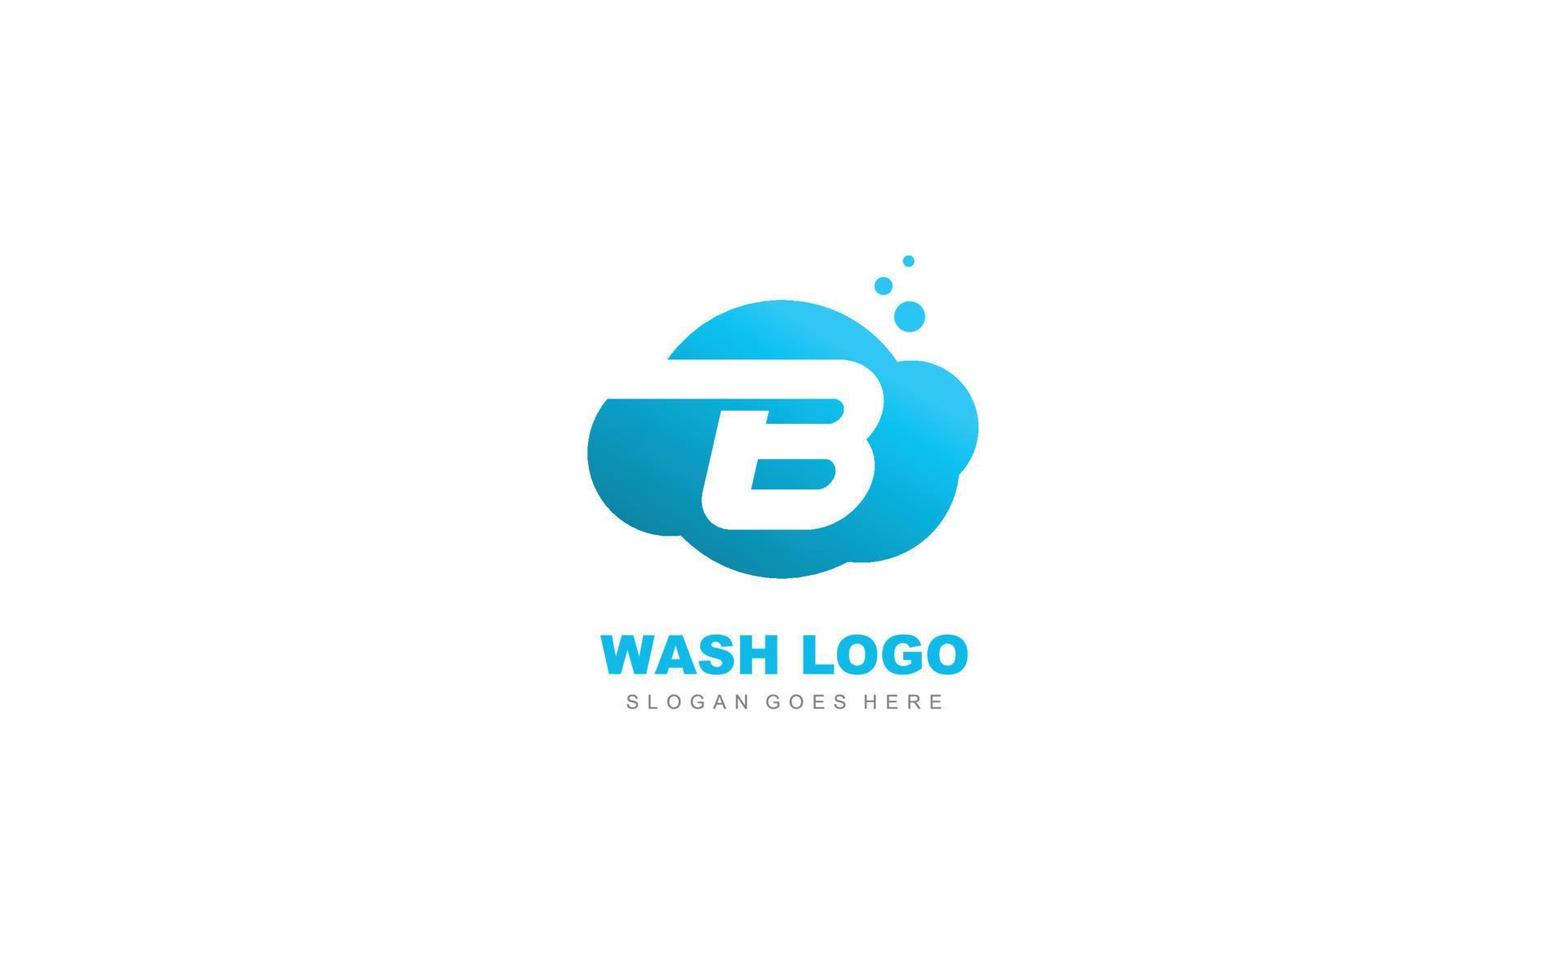 b logo wolk voor branding bedrijf. brief sjabloon vector illustratie voor uw merk.